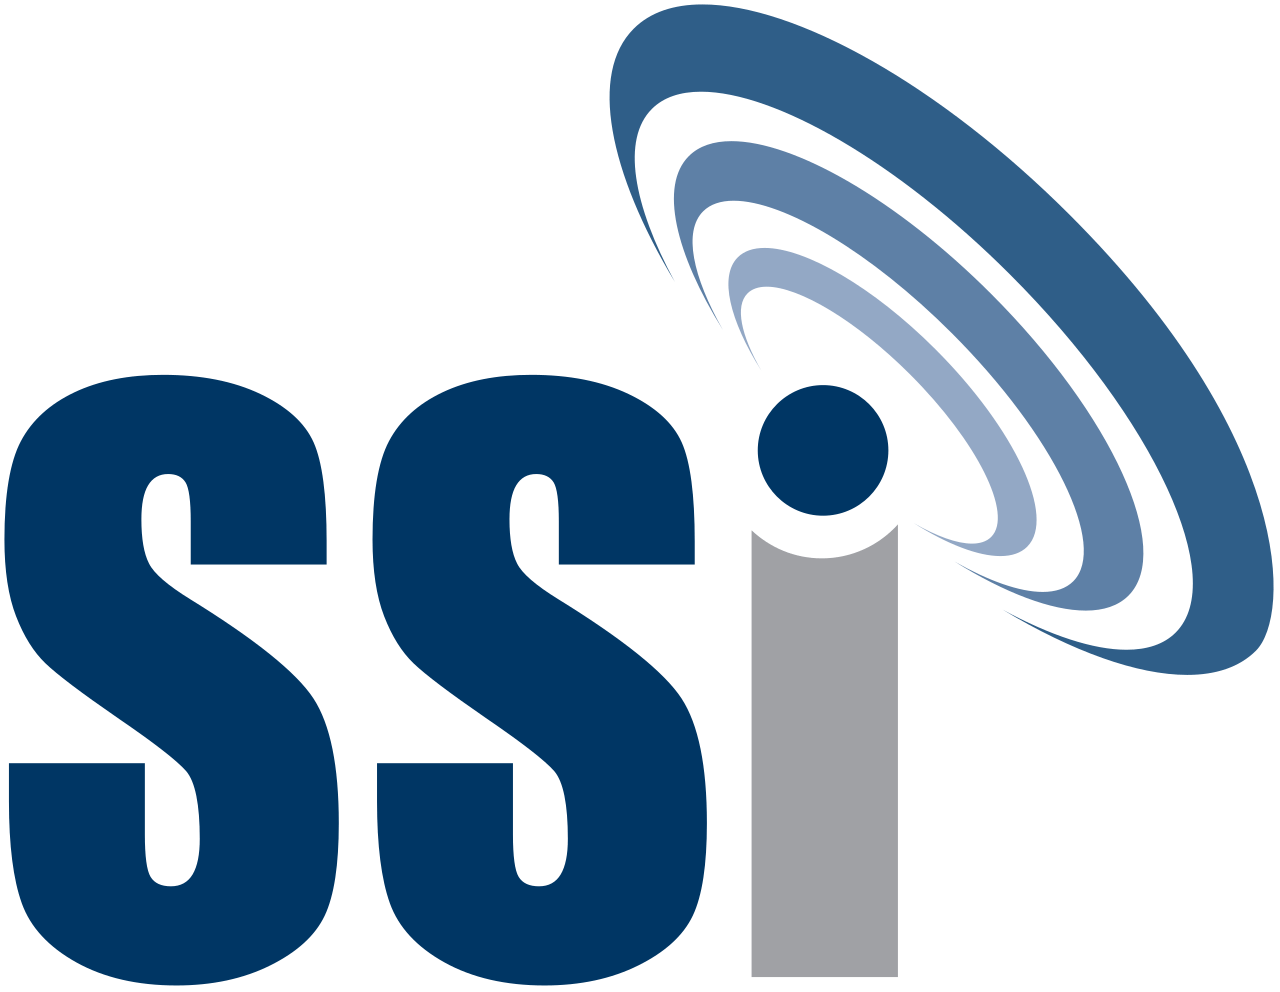 Micro Logo - File:SSI Micro logo.svg